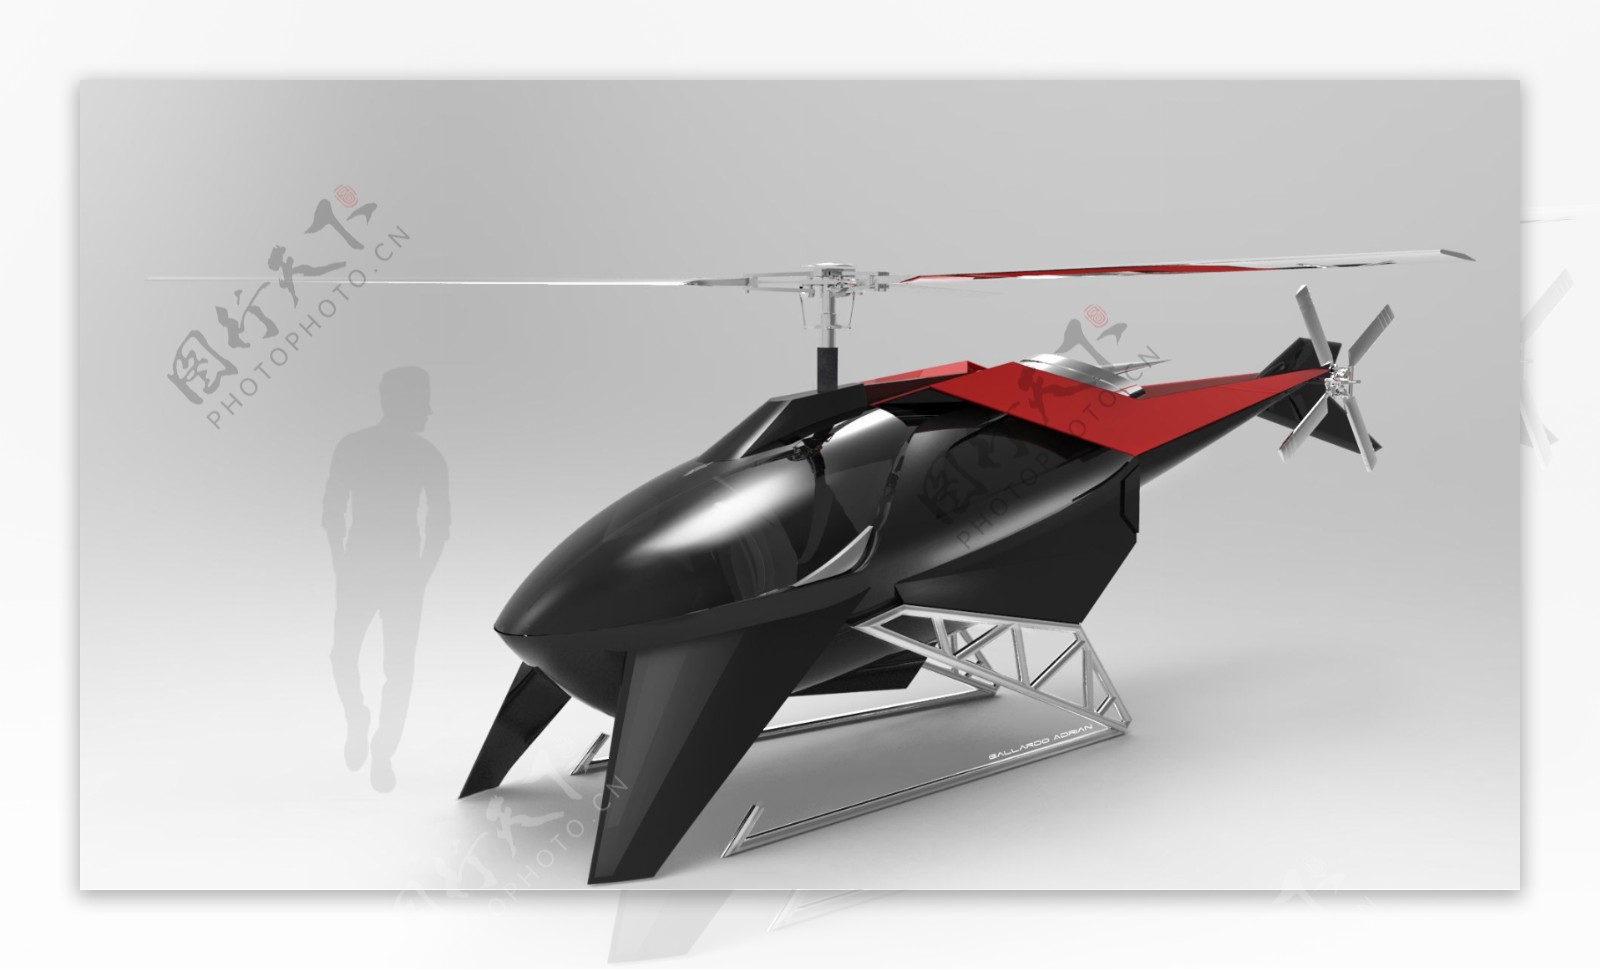 创意小型直升机设计